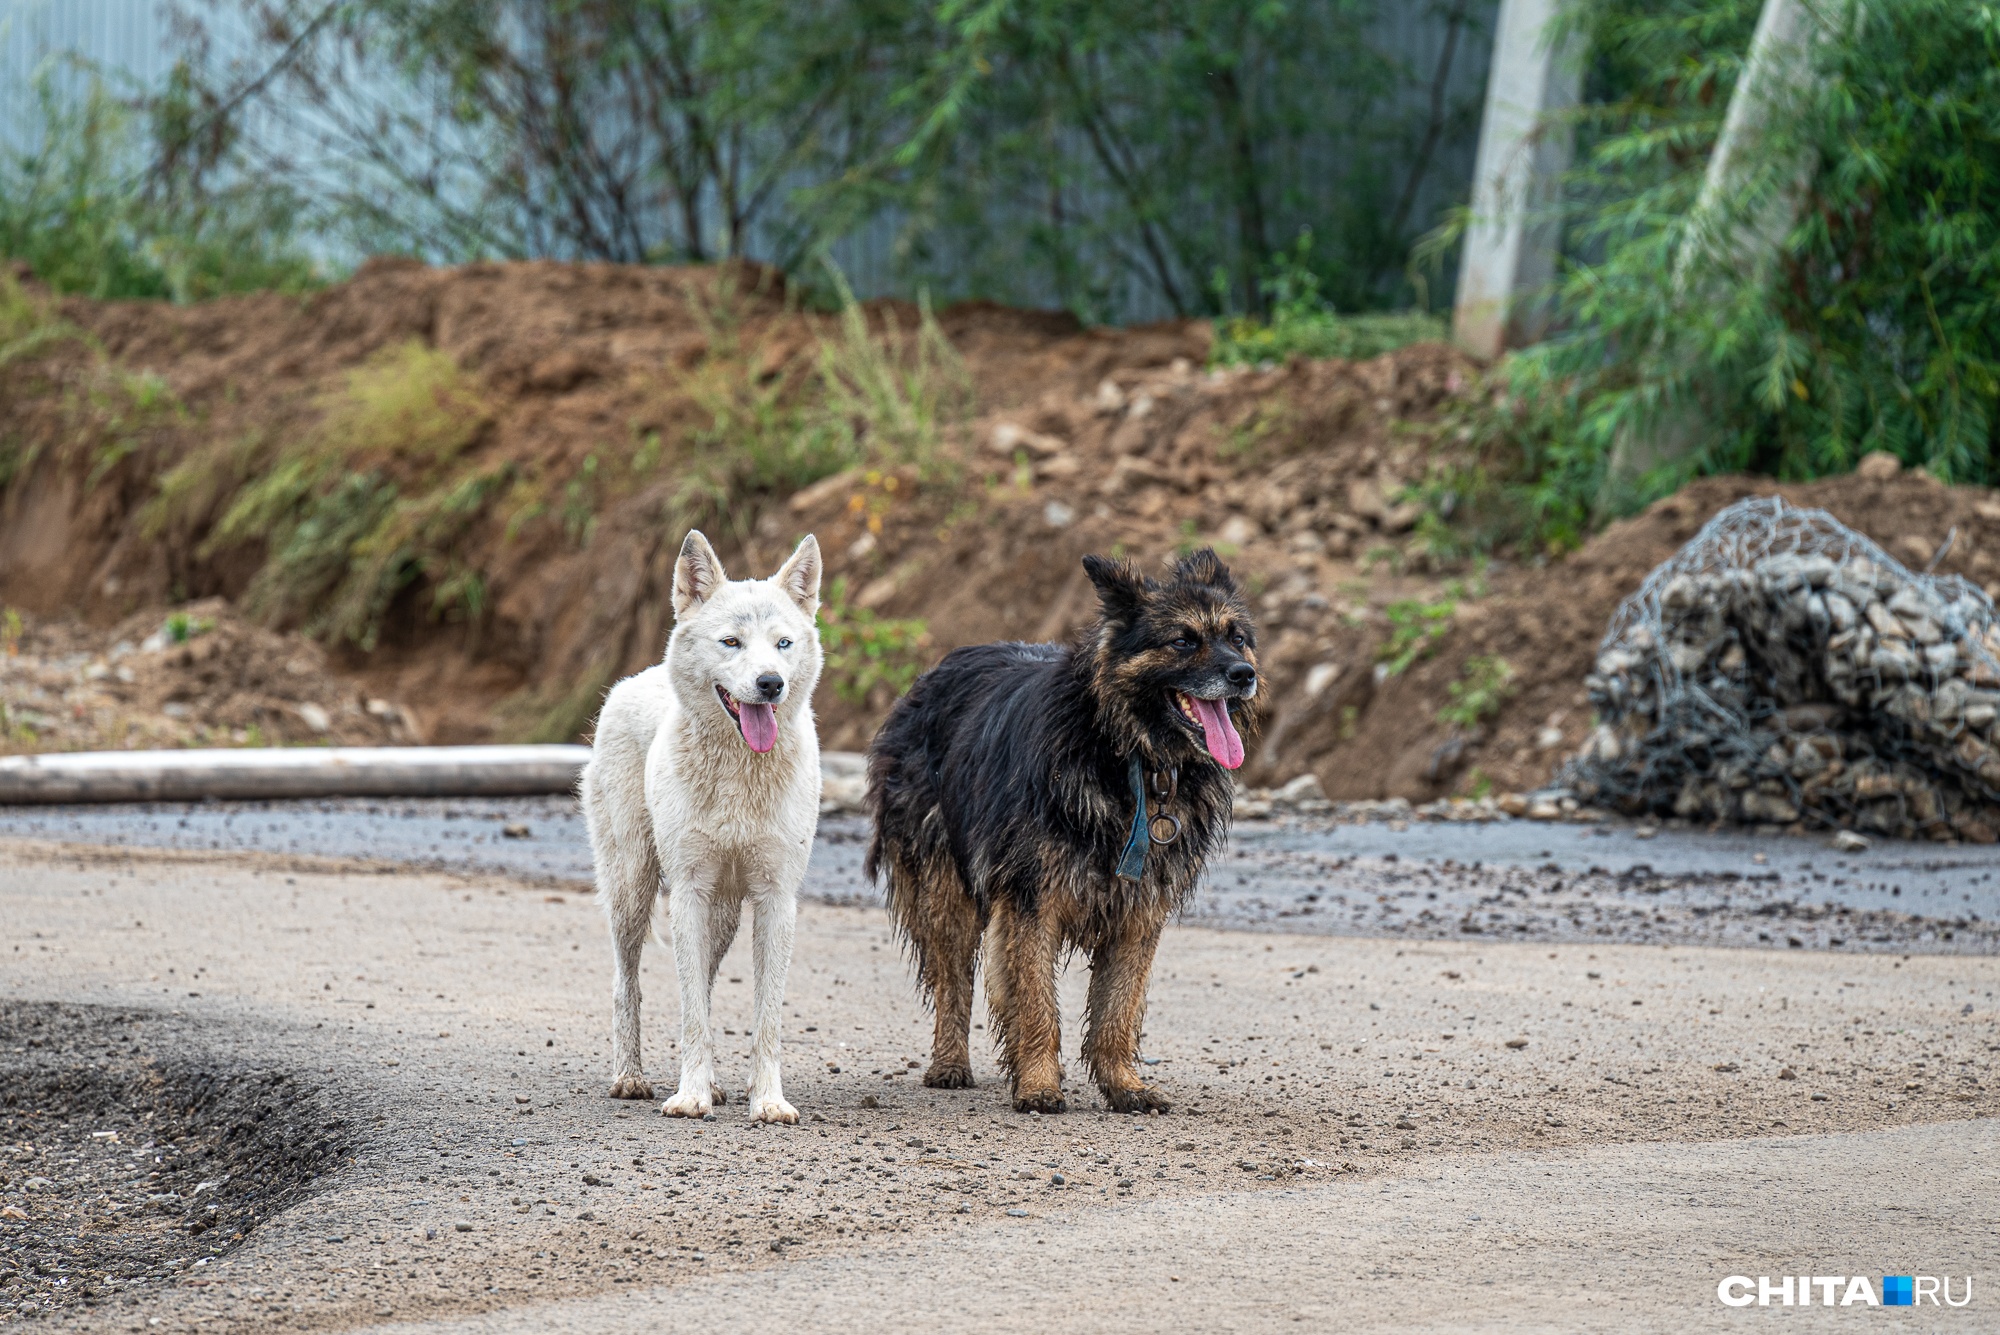 Жители Читы написали жалобу на фирму «Пять звезд», которая отлавливает собак